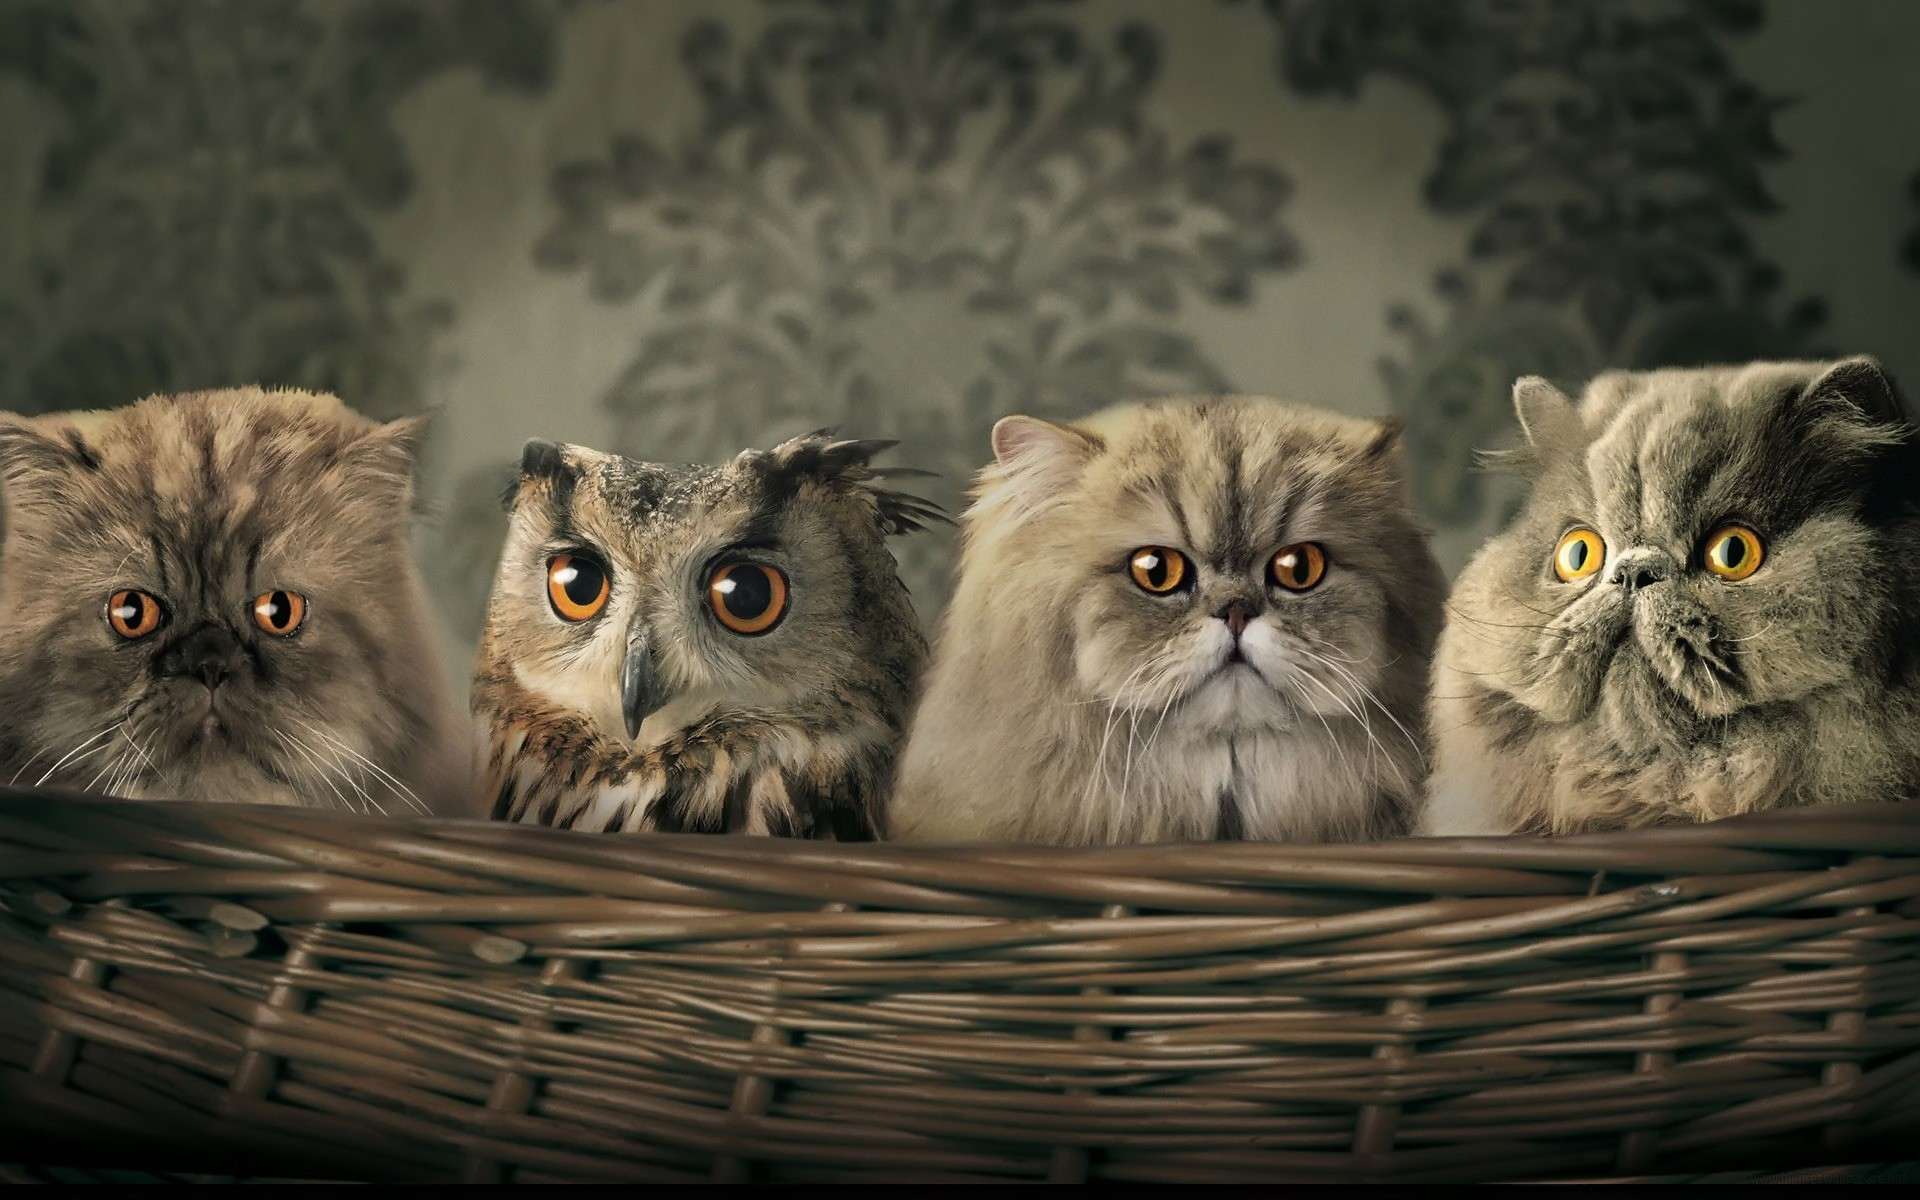 Сова спряталась среди персидских кошек, прикольная смешная картинка фото